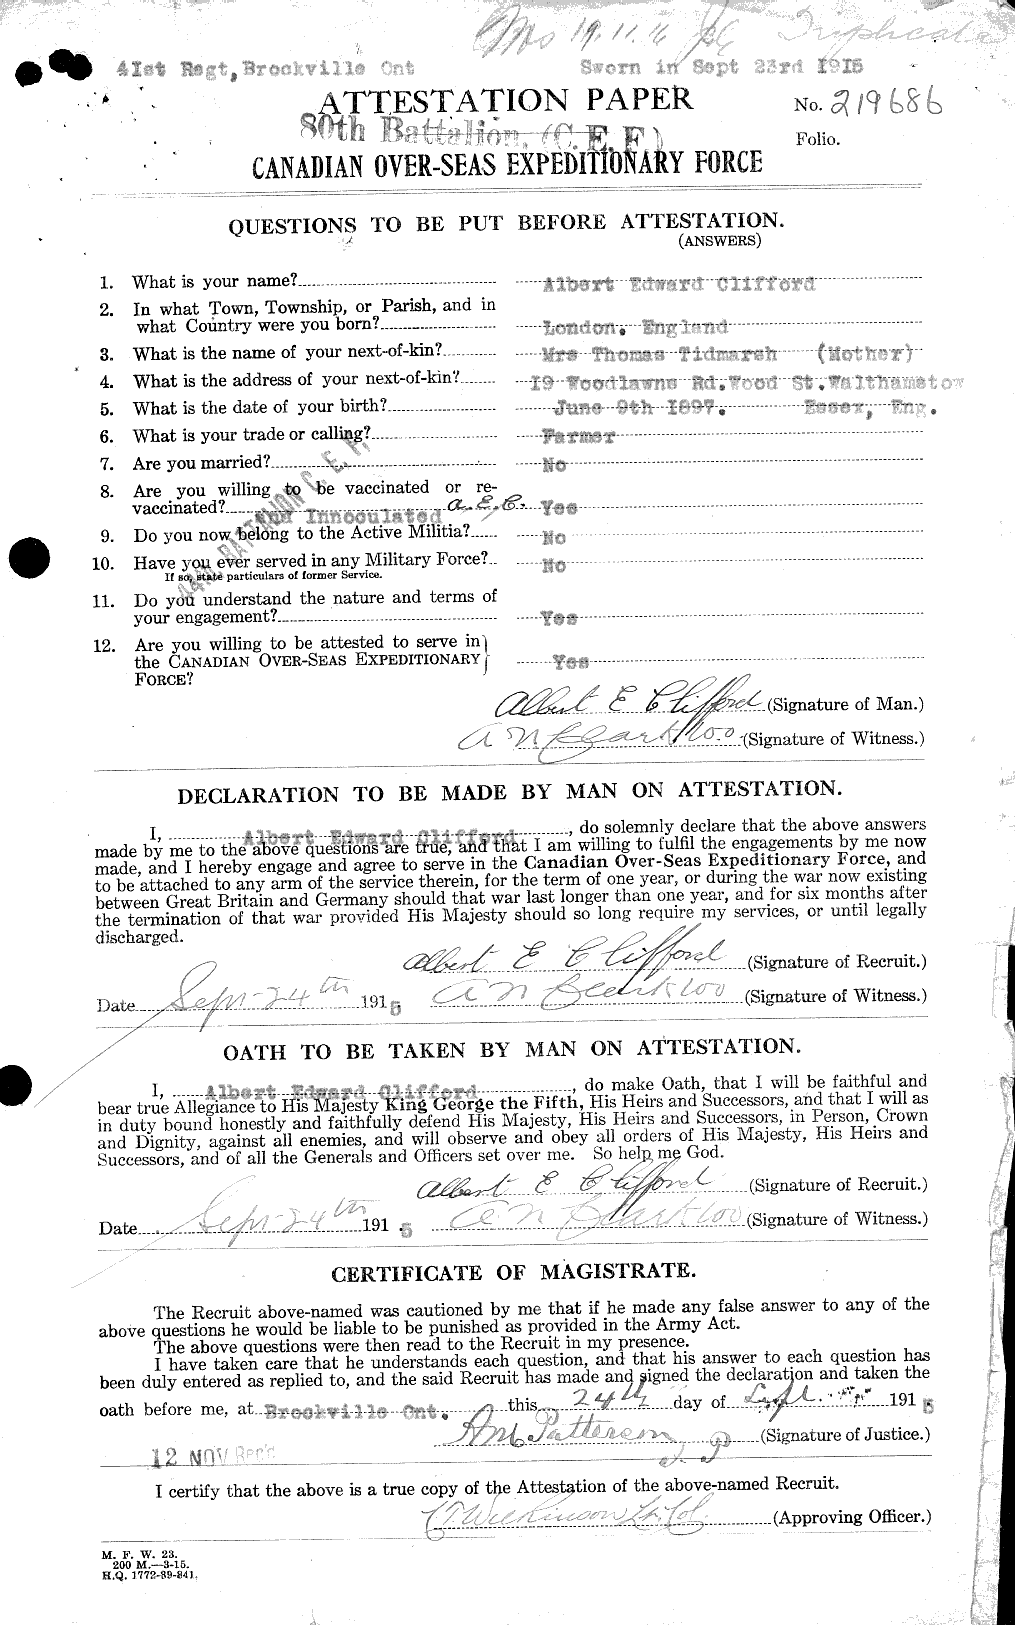 Dossiers du Personnel de la Première Guerre mondiale - CEC 024133a